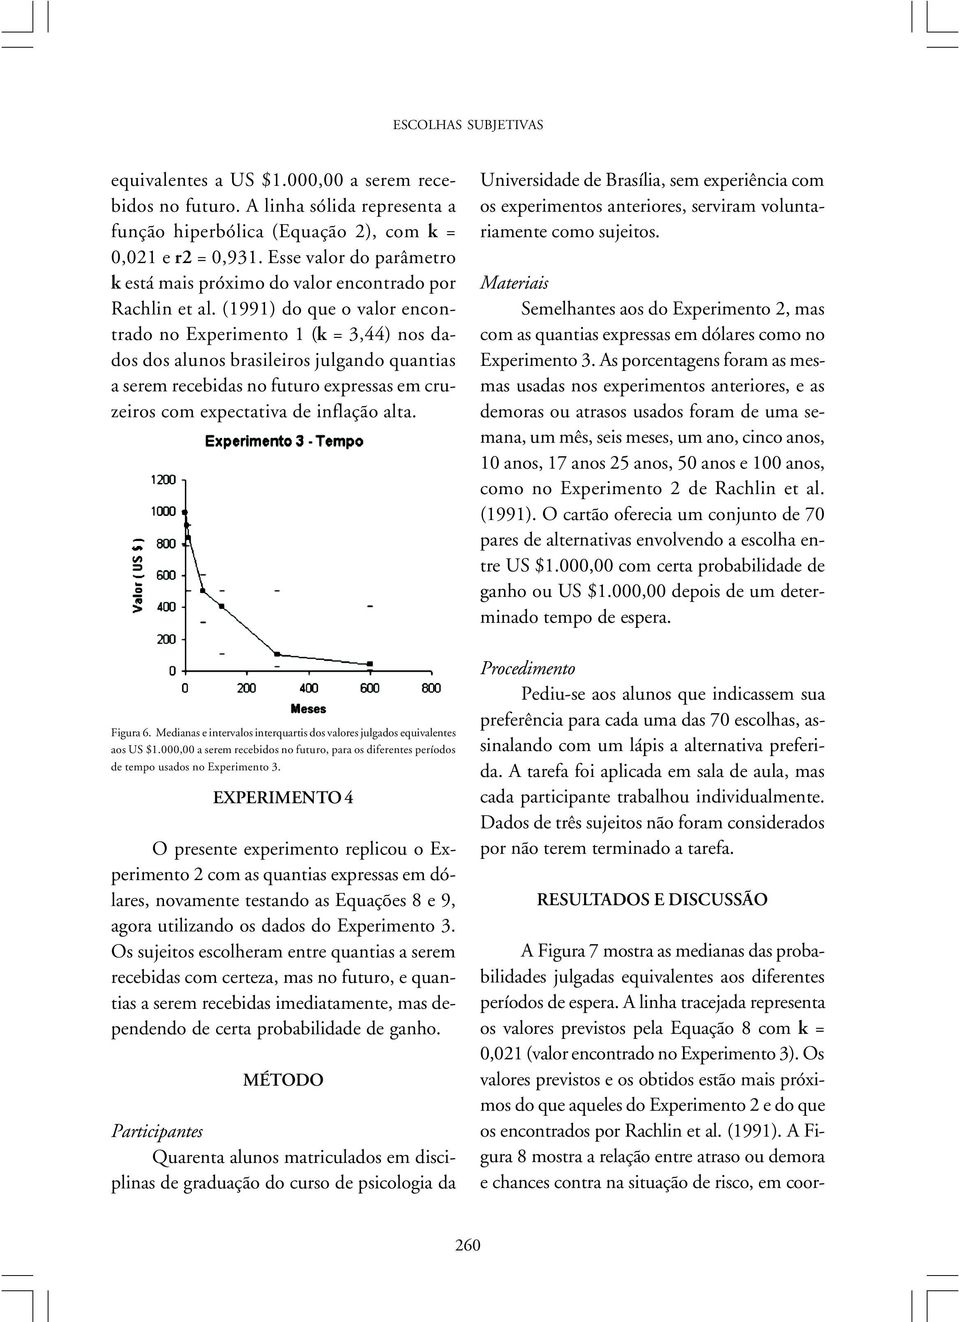 (1991) do que o valor encontrado no Experimento 1 (k = 3,44) nos dados dos alunos brasileiros julgando quantias a serem recebidas no futuro expressas em cruzeiros com expectativa de inflação alta.